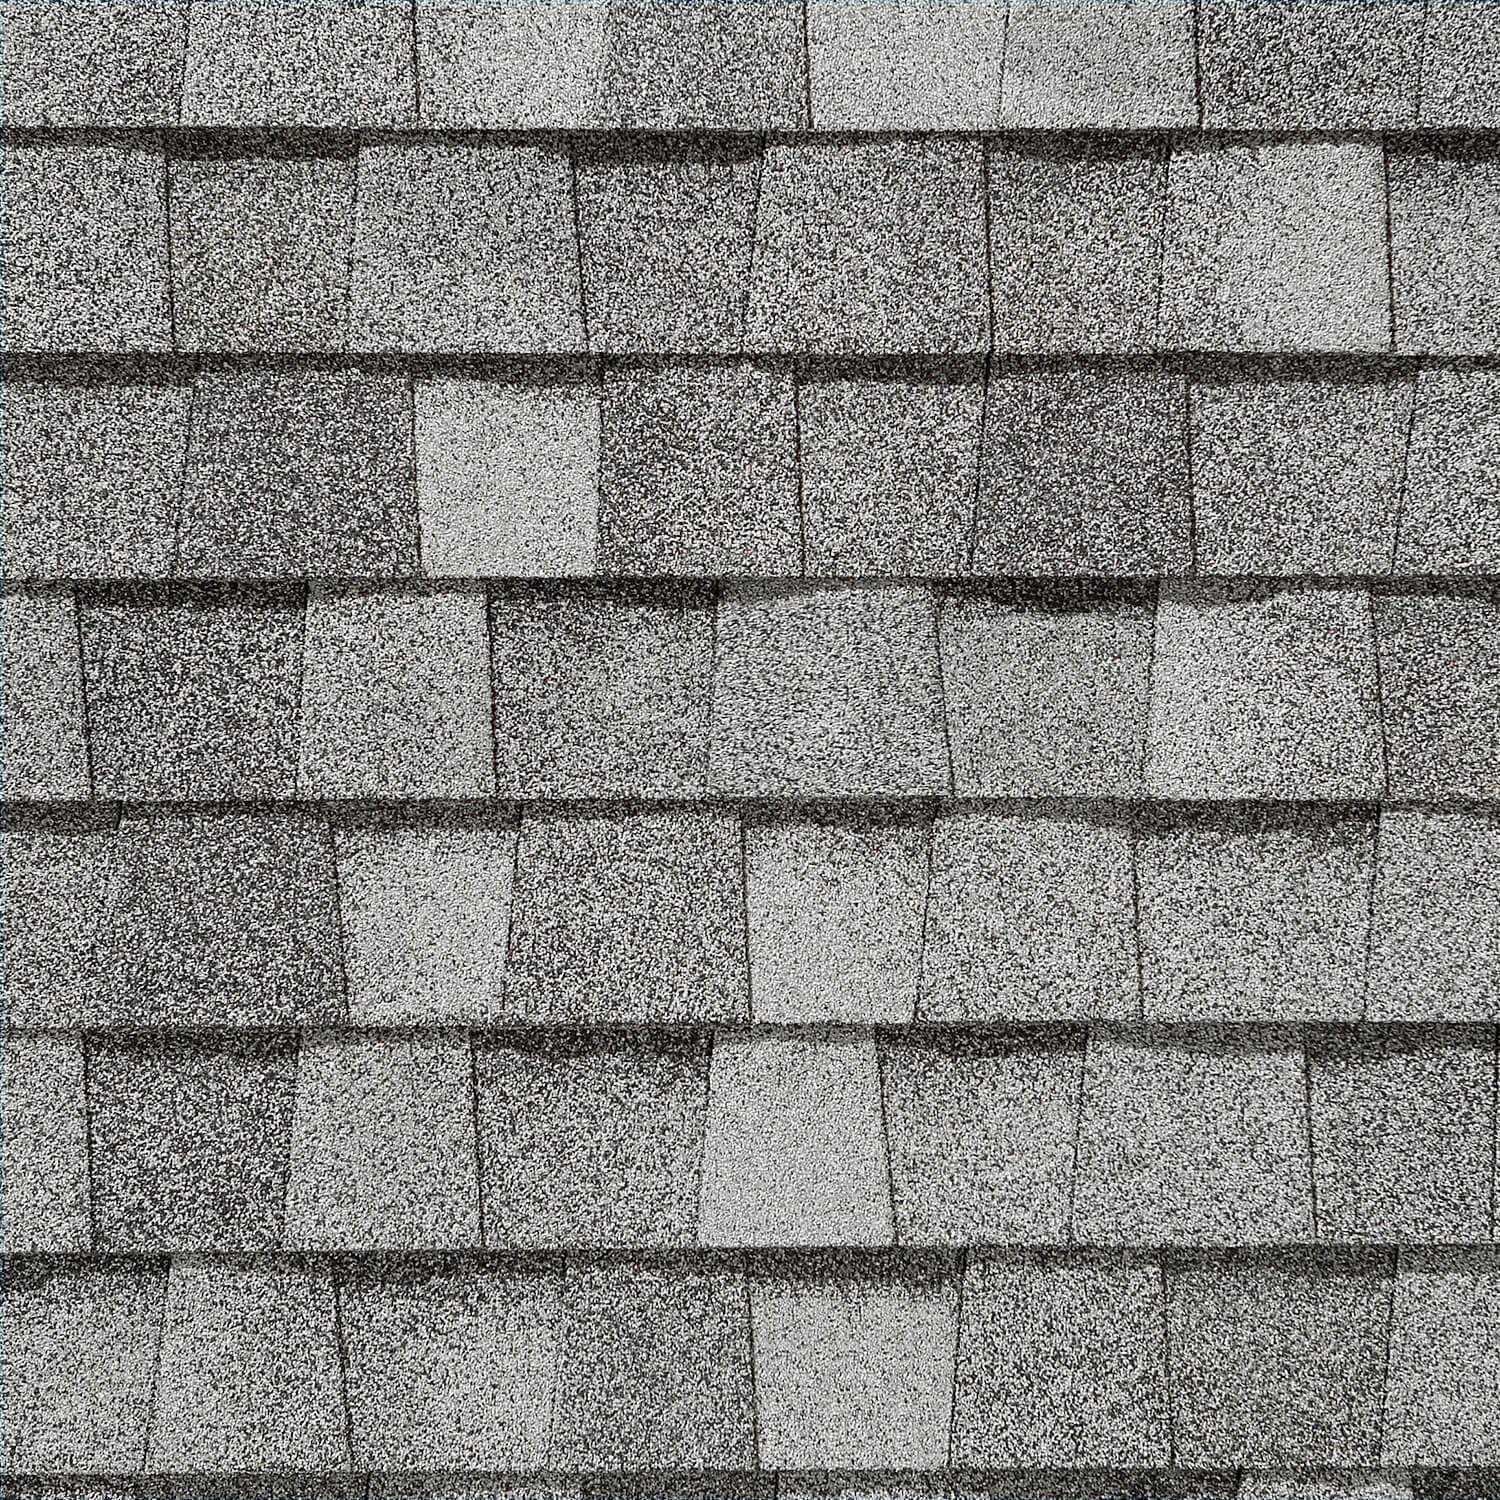 Landmark Birchwood tile